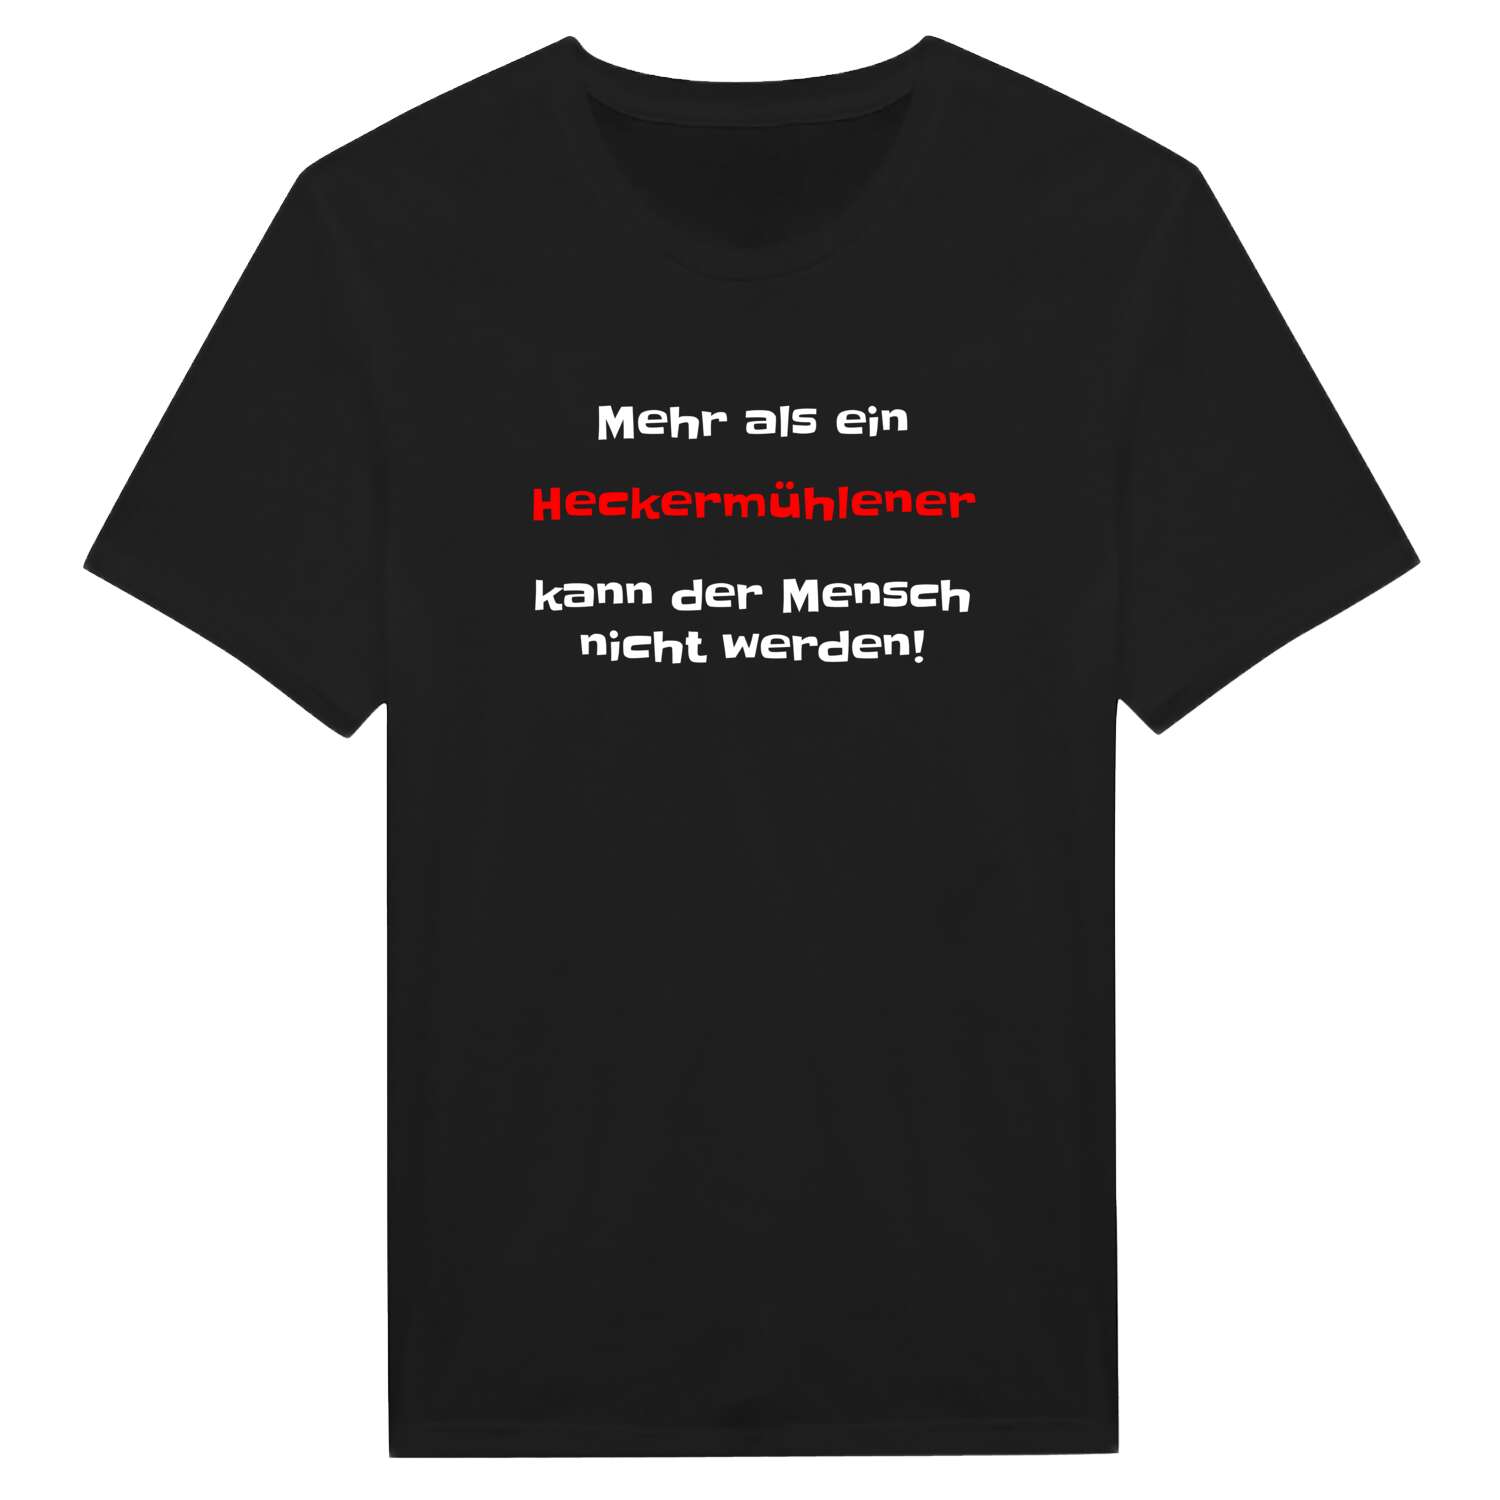 Heckermühle T-Shirt »Mehr als ein«